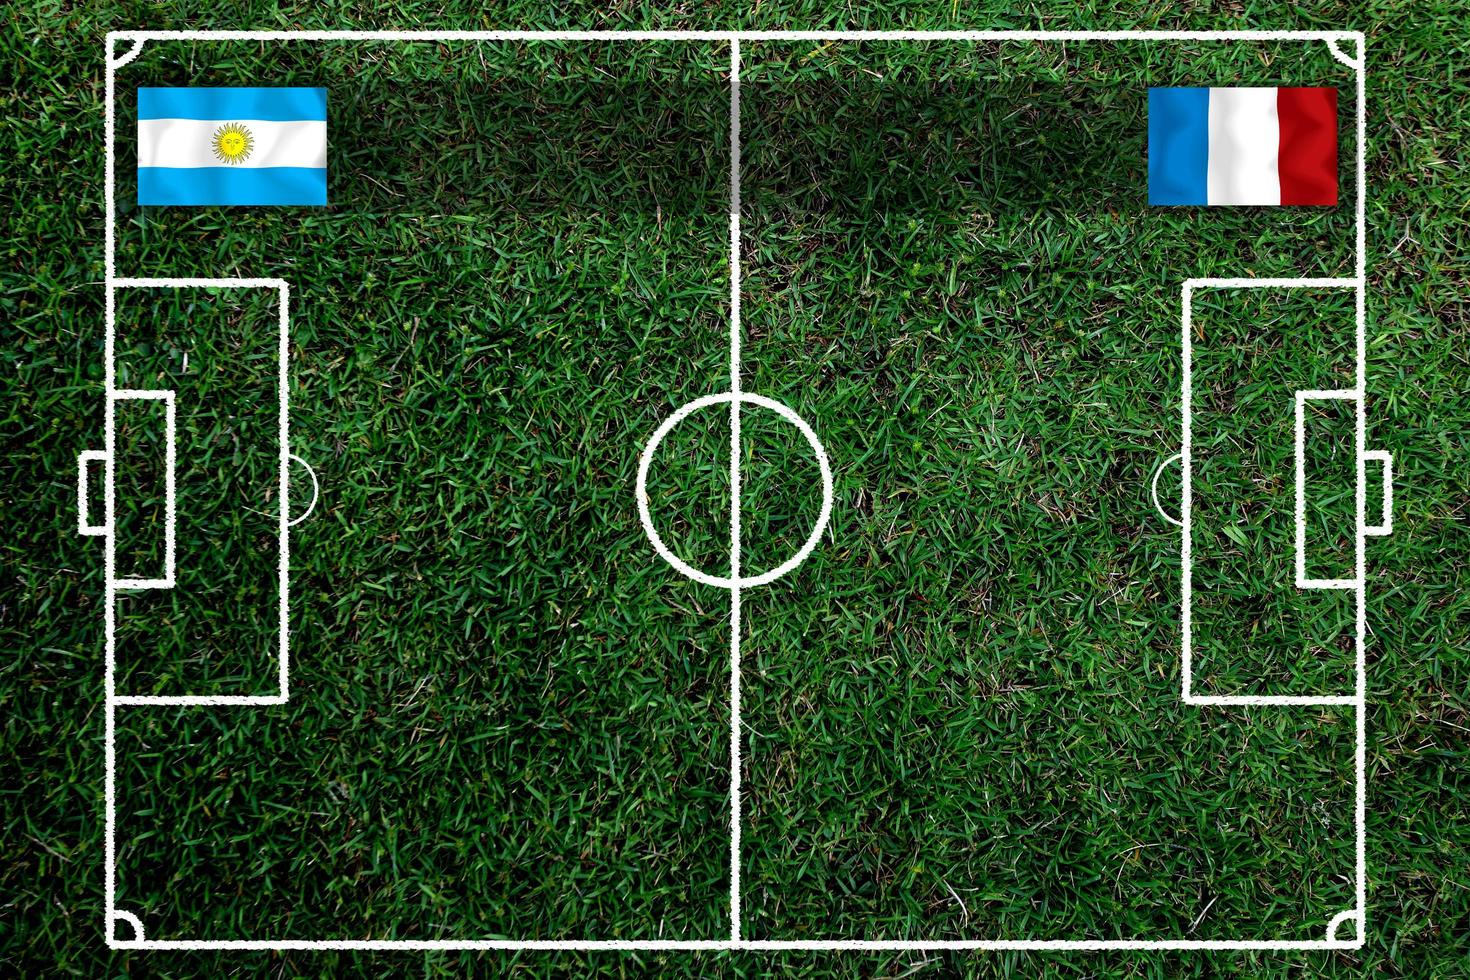 compétition de coupe de football entre le national argentin et le national français. photo